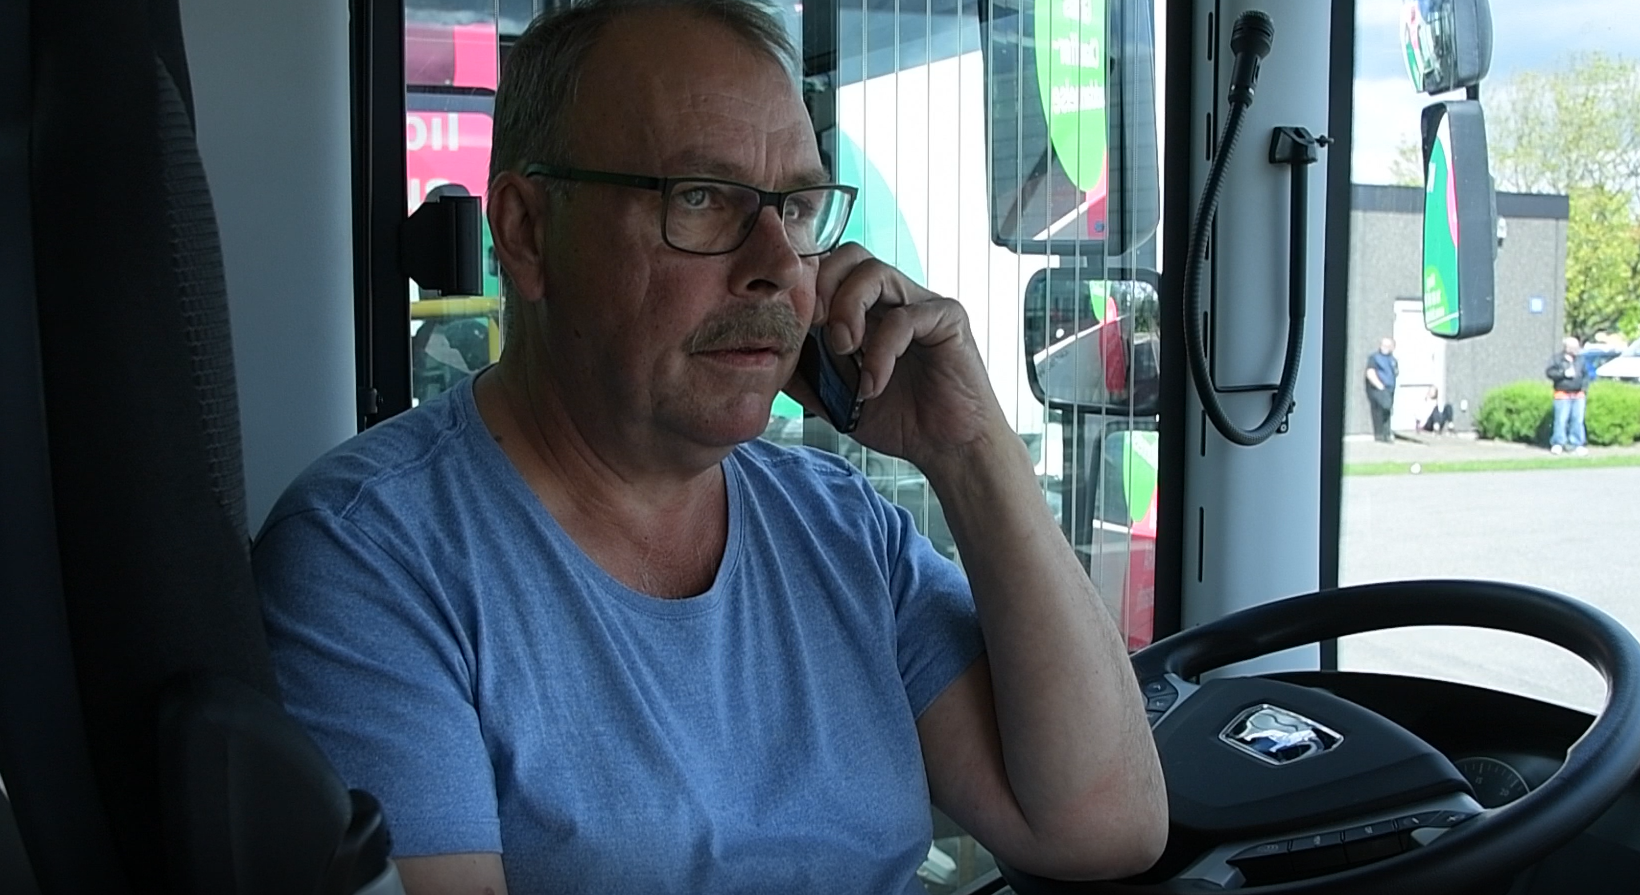 Efter prøven ringer Slagter Ole til Jørns busrejser. Se om det er med gode eller dårlige nyheder i klippet herunder. Foto: Torben Hansen